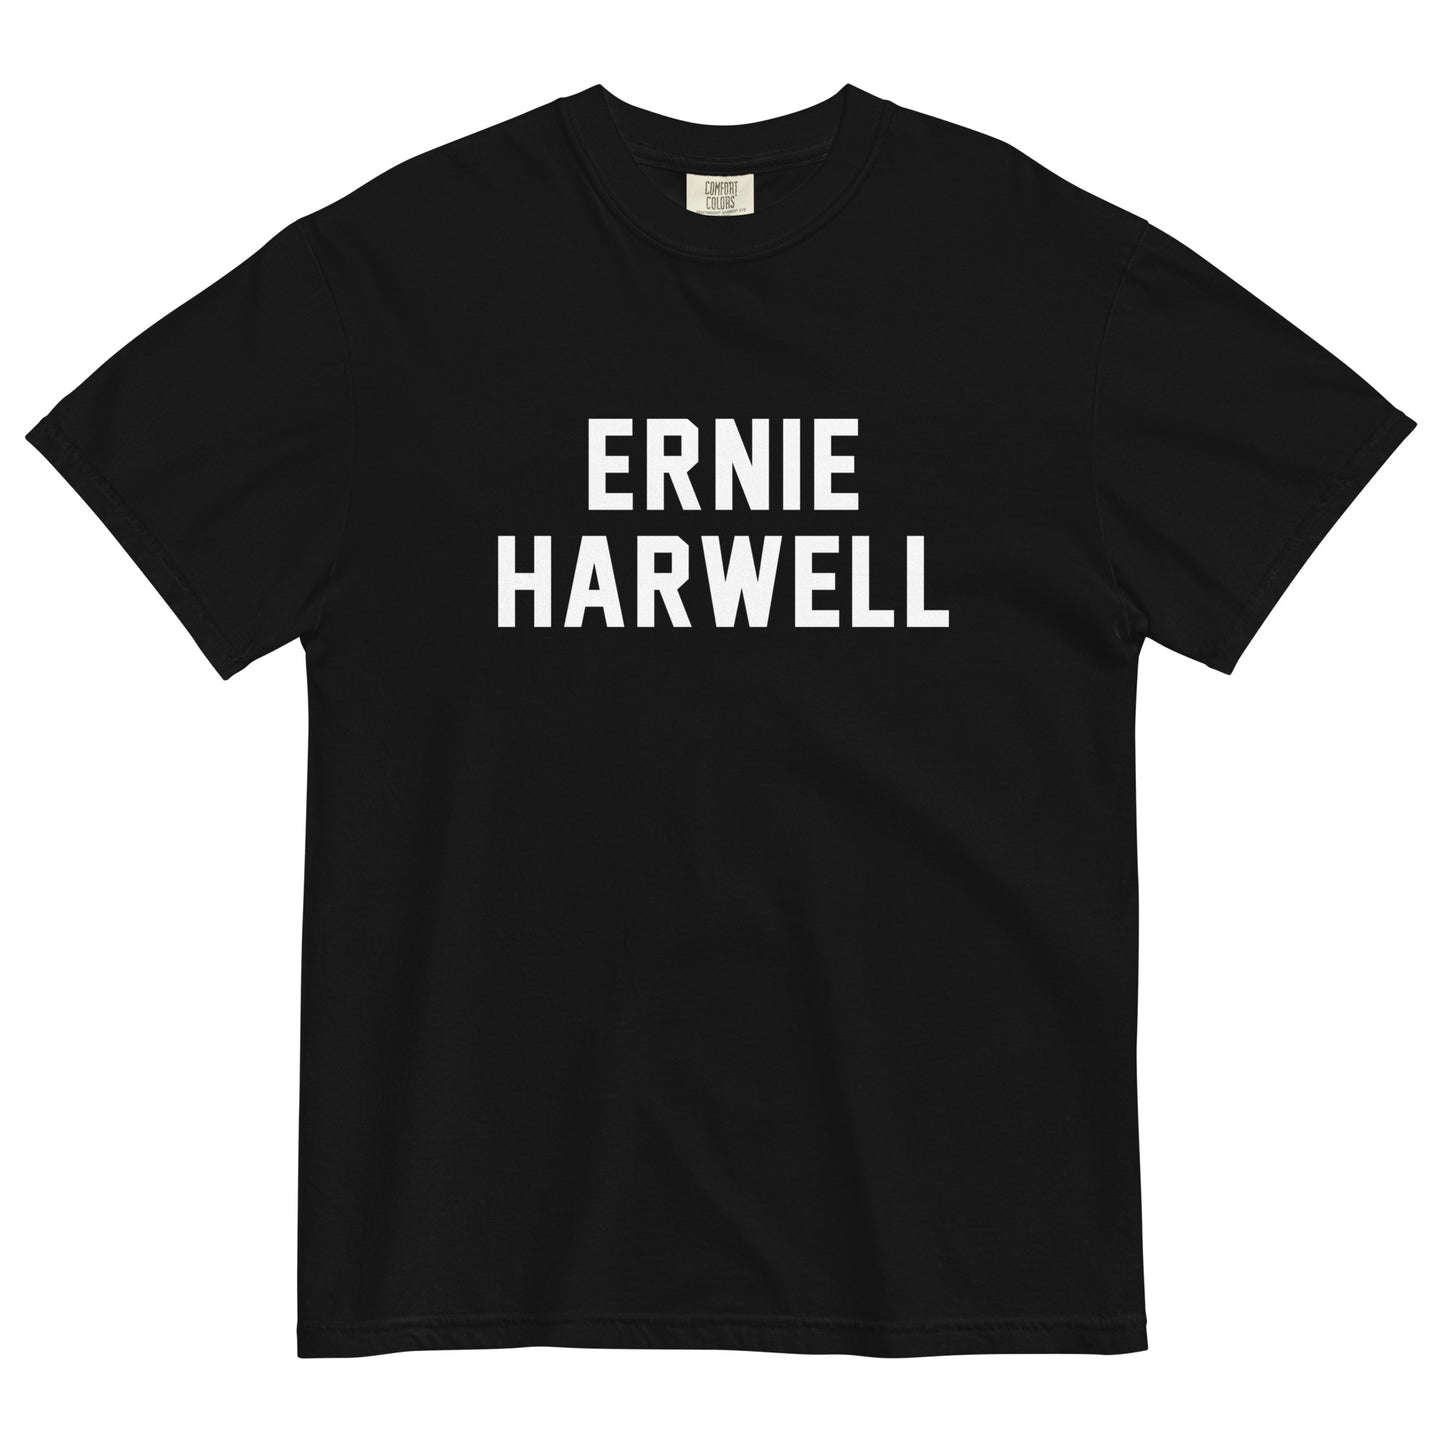 ERNIE HARWELL